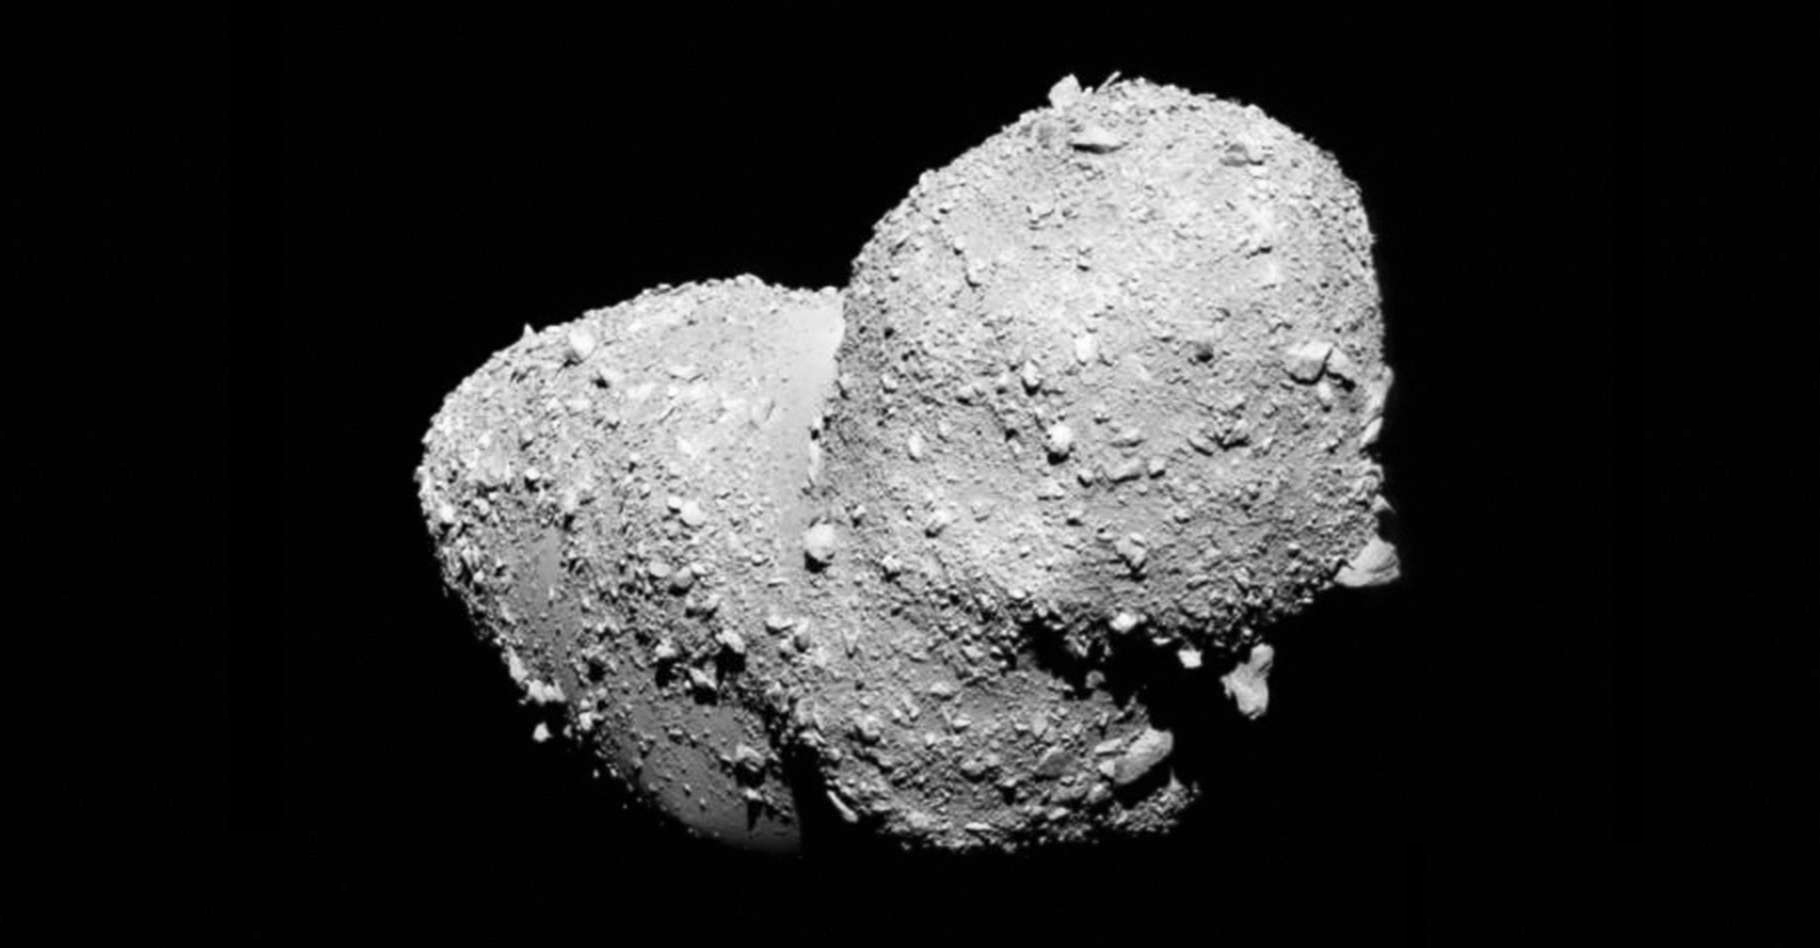 Le Luxembourg est en route vers l'exploitation minière des astéroïdes. Ici, l’astéroïde bilobé en forme de cacahuète, Itokawa, imagé en 2005 par la sonde japonaise Hayabusa venue l’épier. © Jaxa